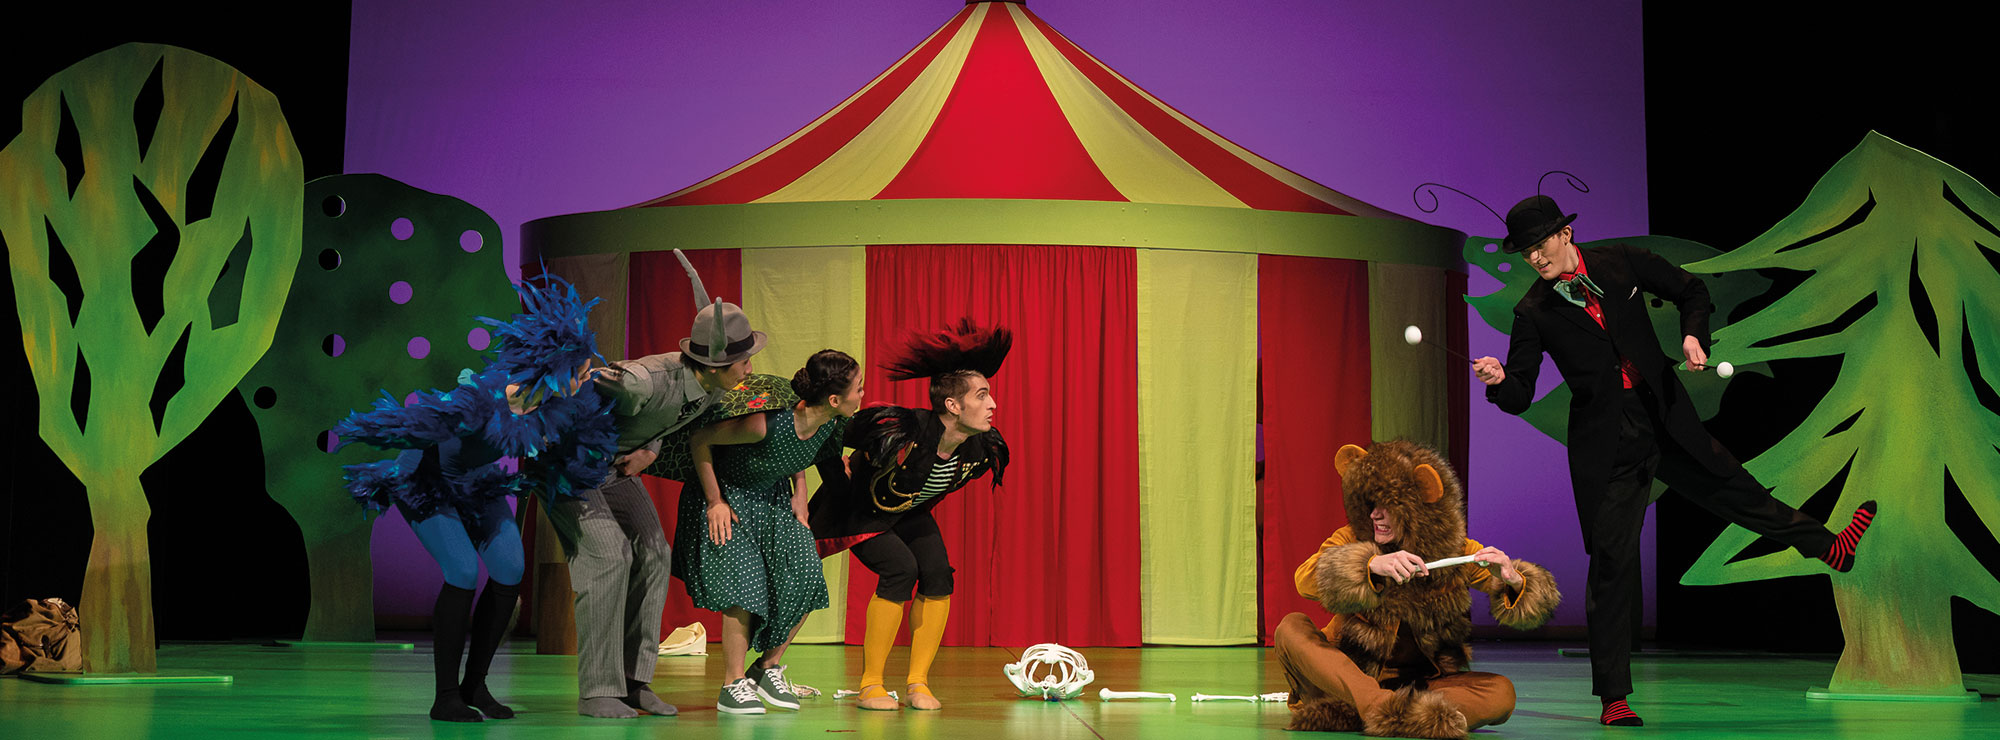 Szene aus DER KARNEVAL DER TIERE, Zirkuslandschaft, ein Löwe hält einen Kochen in der Hand, um ihn herum weitere Tiere